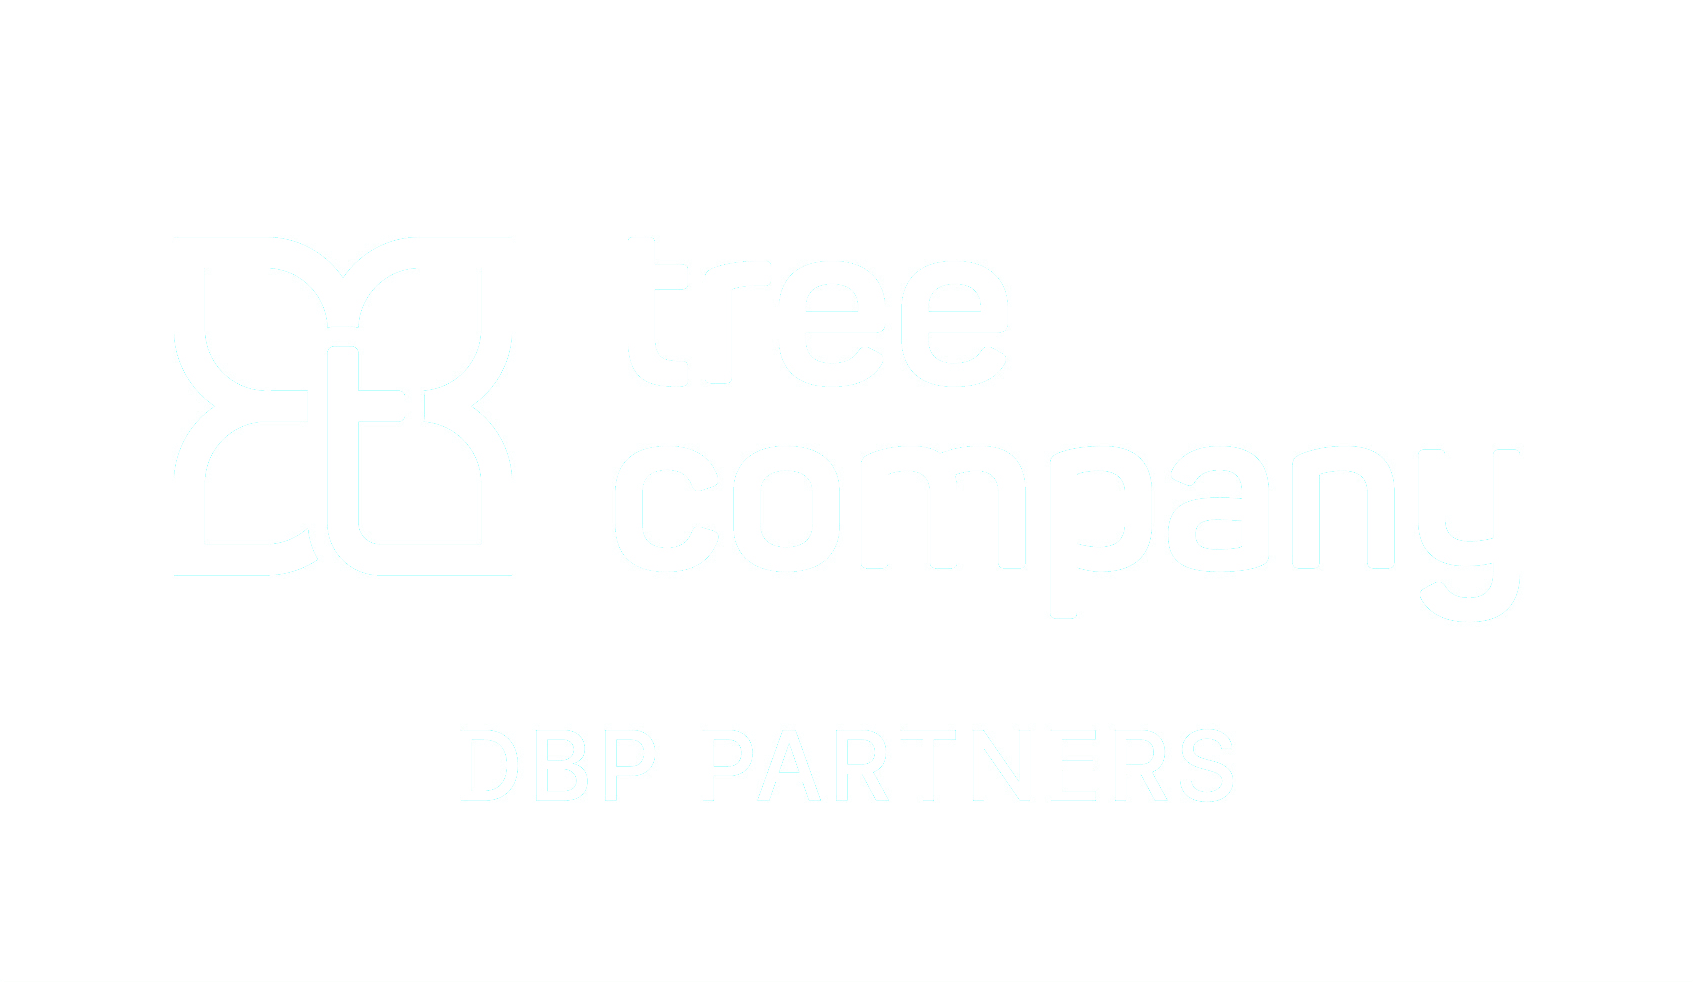 Tree company